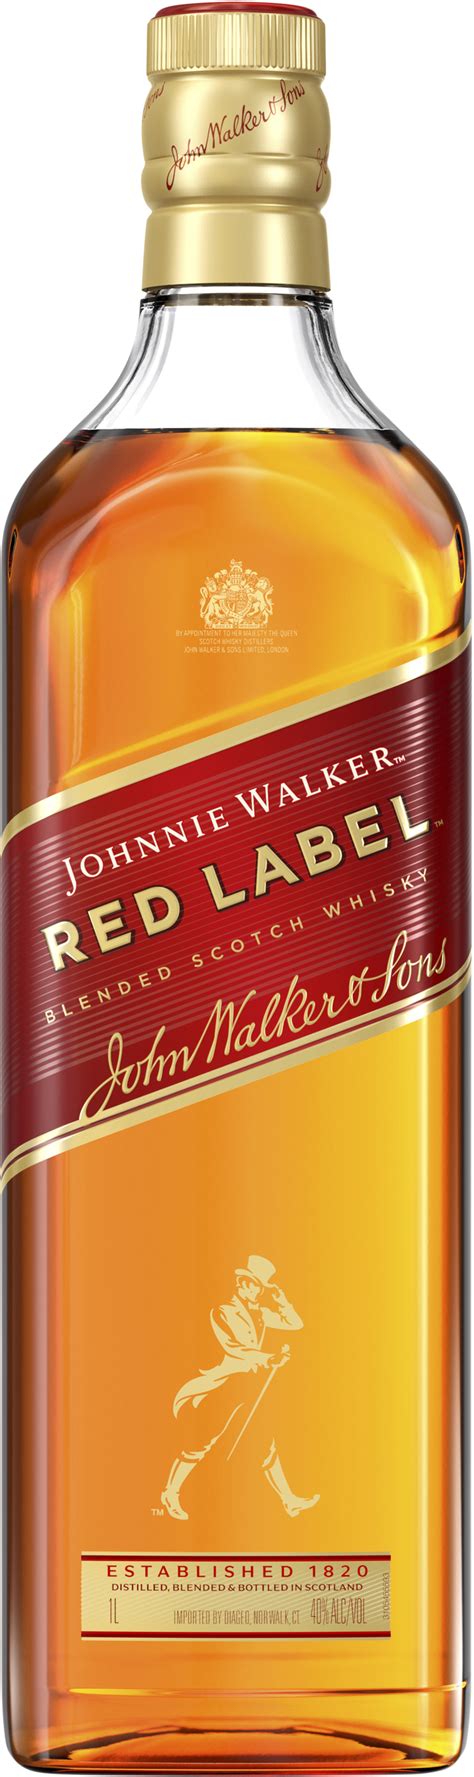 Johnnie walker red label 1 litre morrisons <samp> JOHNNIE WALKER RED LABEL</samp>